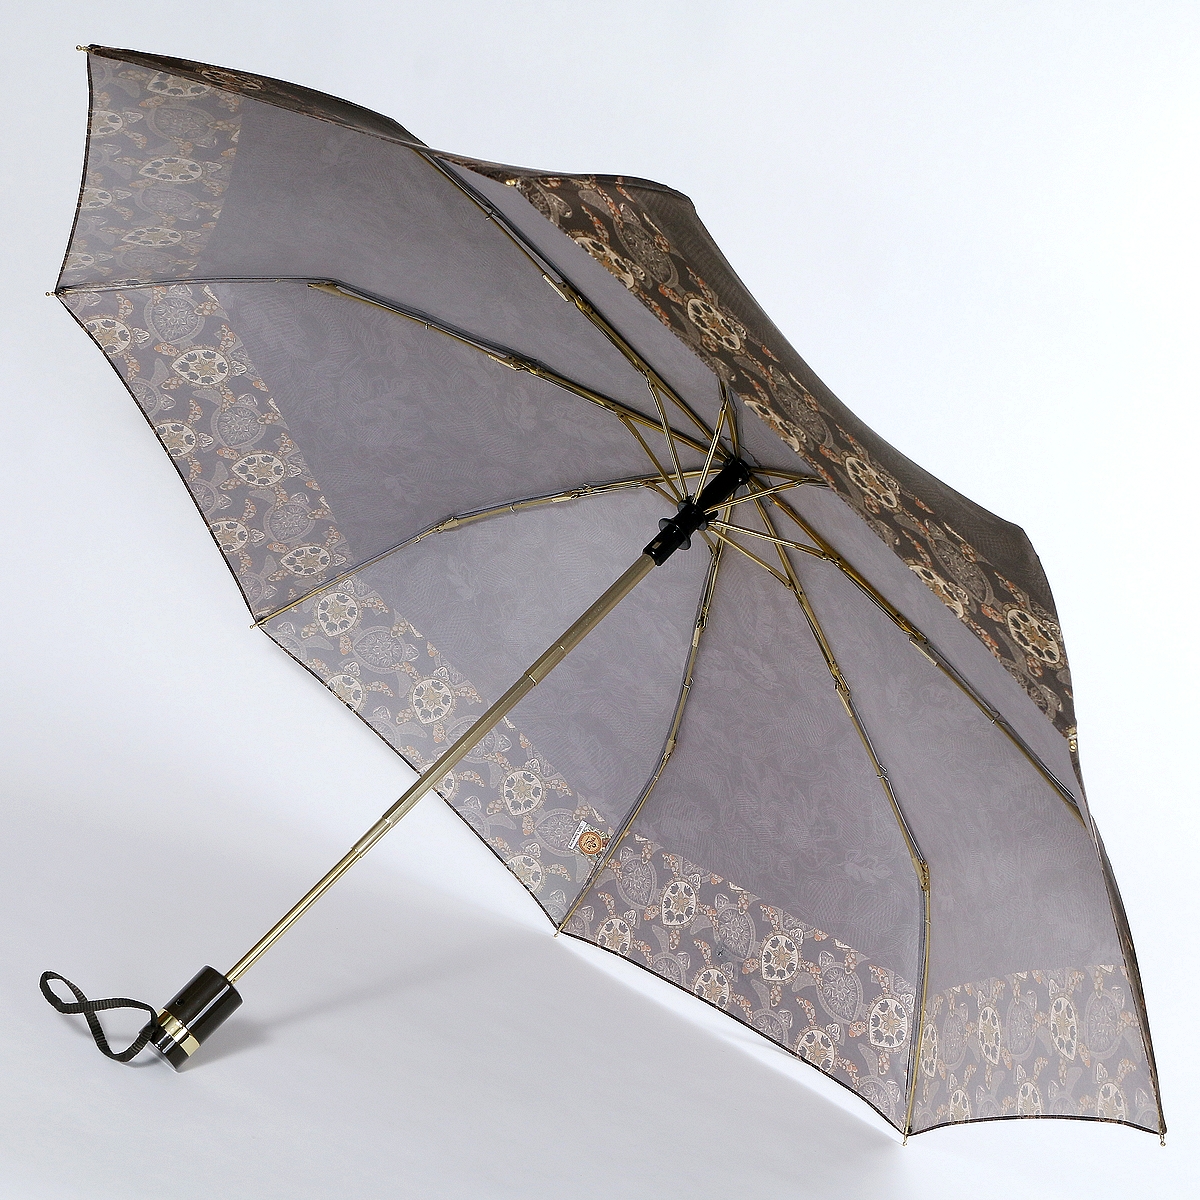 Зонты trust. Зонт фирмы Trust артикул 30472. Зонт Trust. Коричневый зонт. Шоколадный зонт.